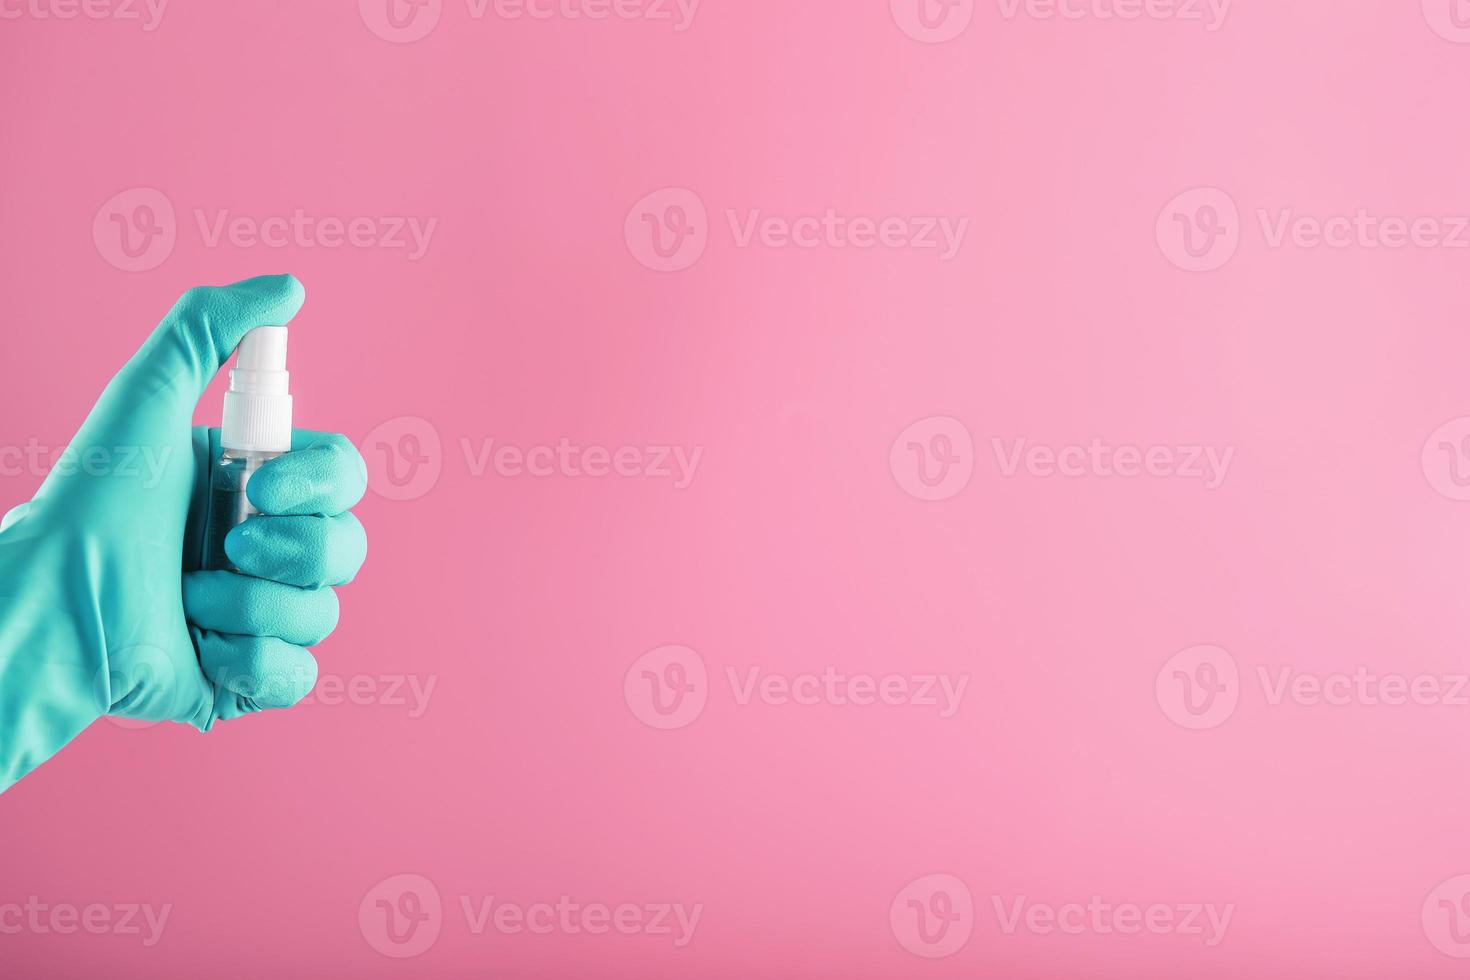 una mano con guantes azules sostiene un desinfectante sobre un fondo rosa. tratamiento antiséptico de manos a partir de desinfectante bacteriano. foto